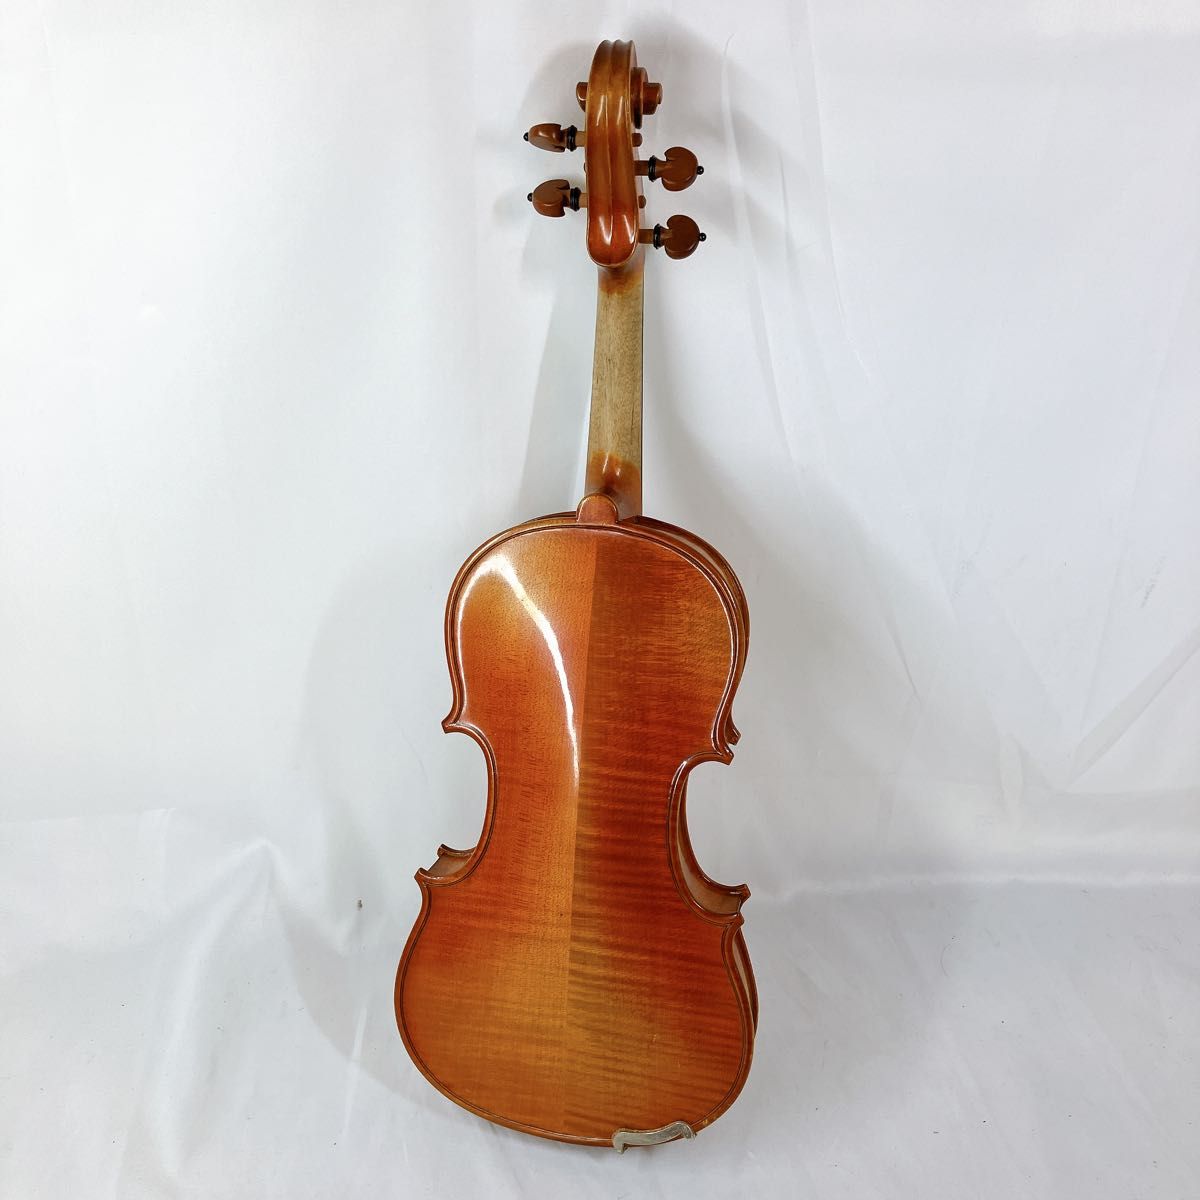 SUZUKI バイオリン No.280 4/4 1990 ワックス済 ヴァイオリン 弦楽器 弓 スズキ